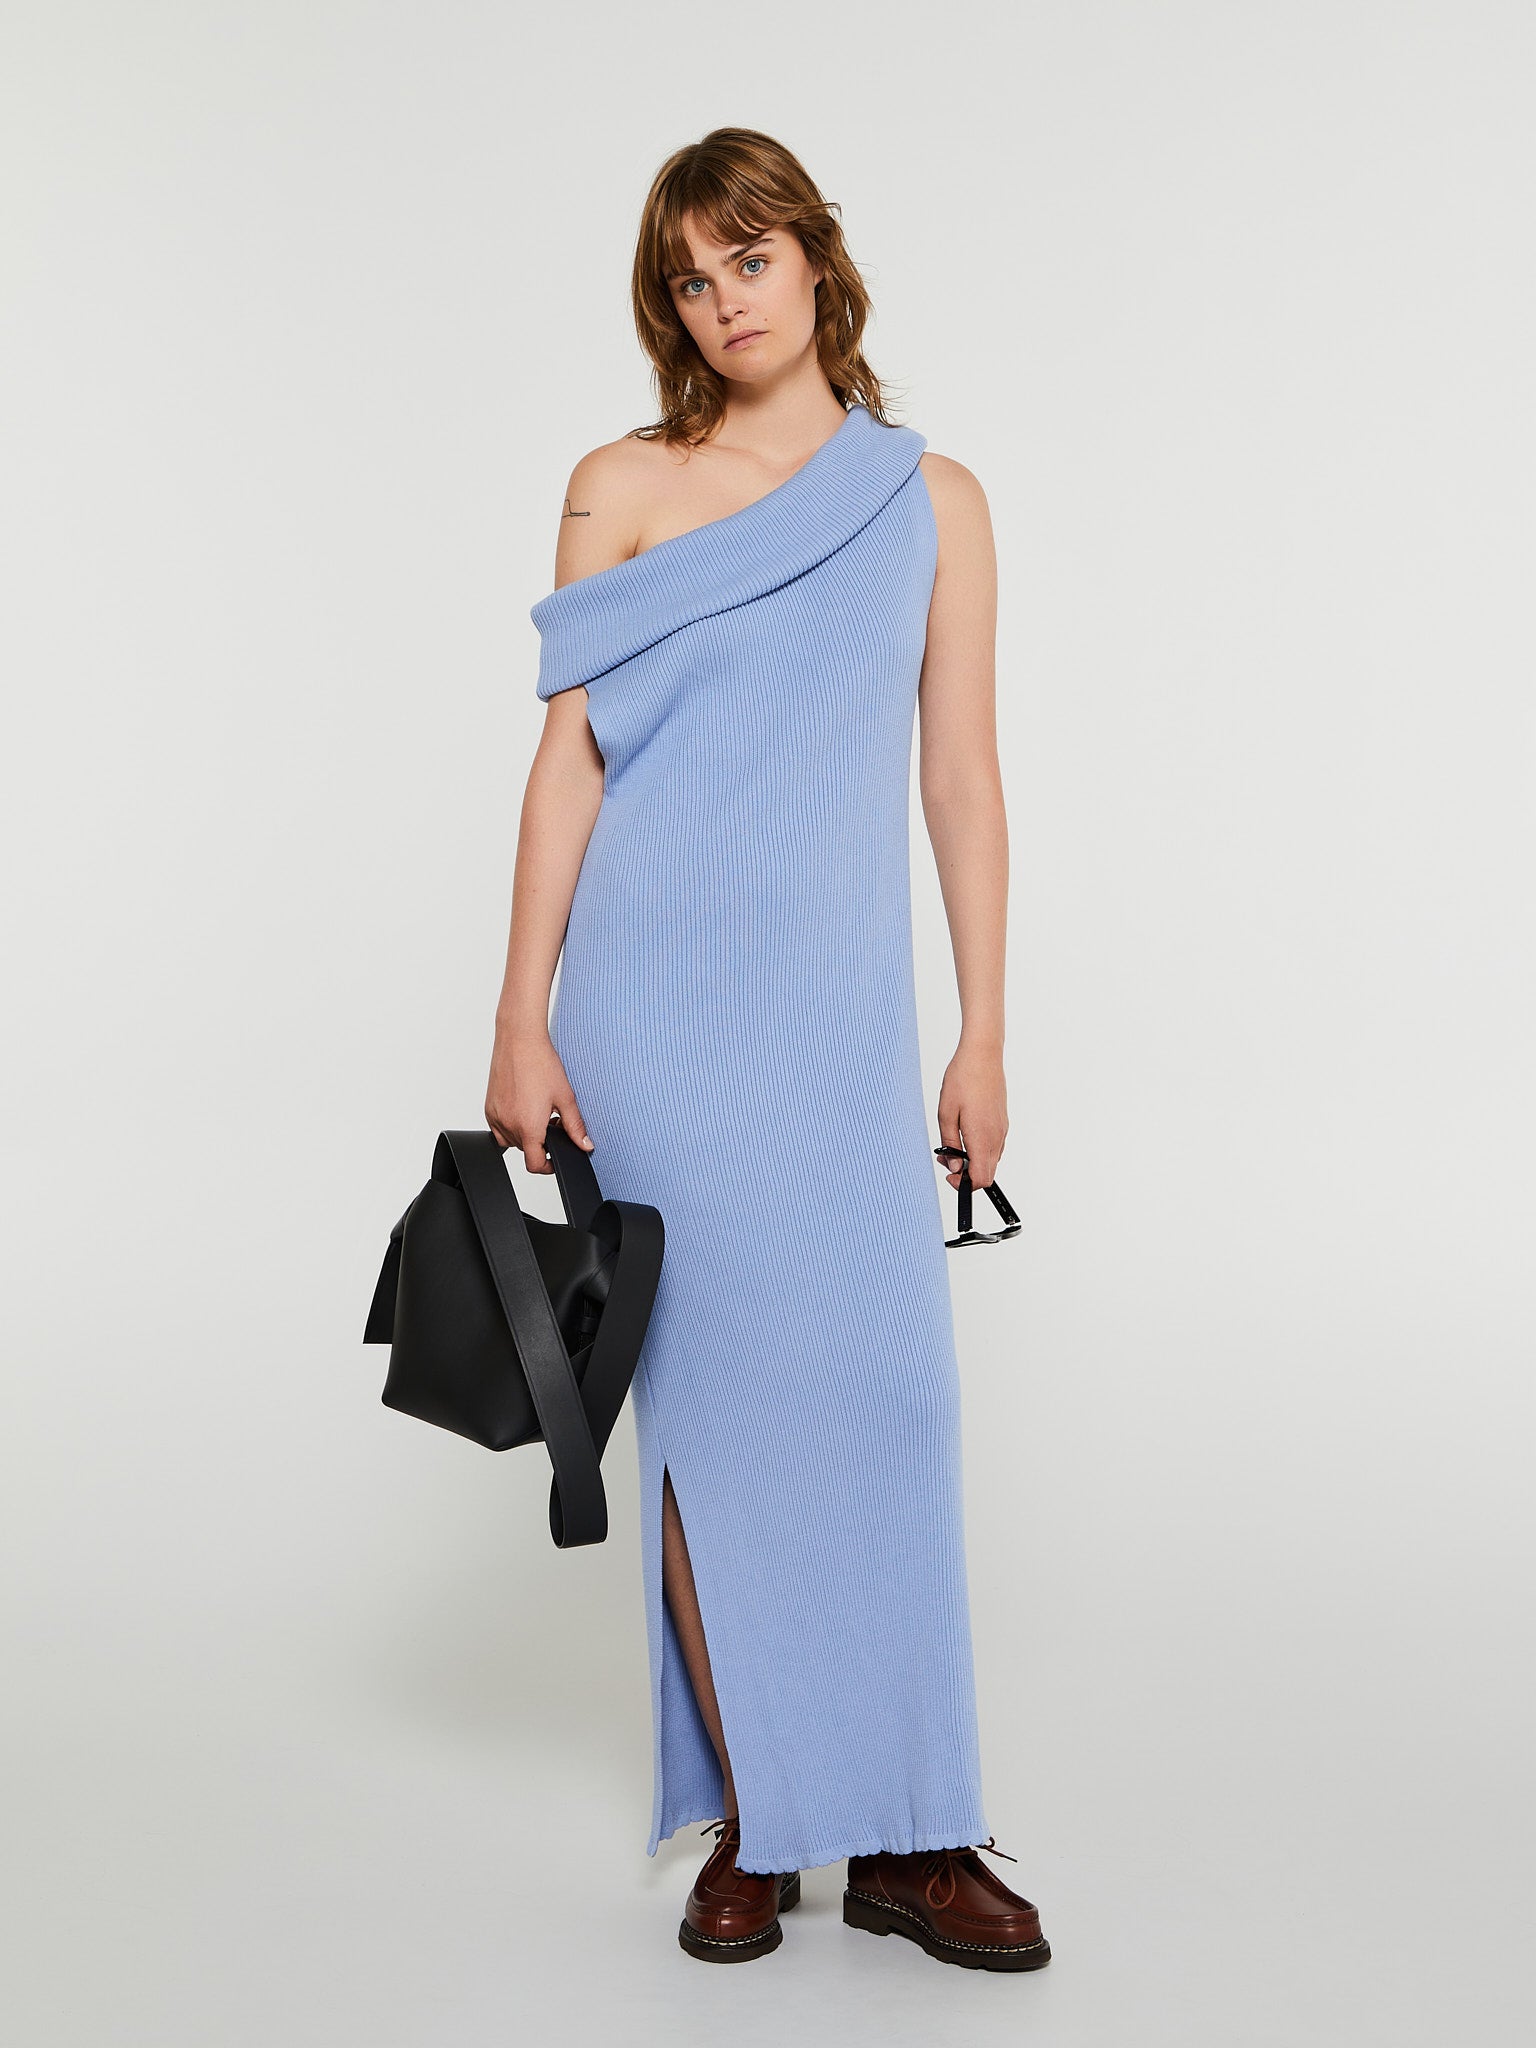 Ellinor Knit Tube Dress in Light Blue